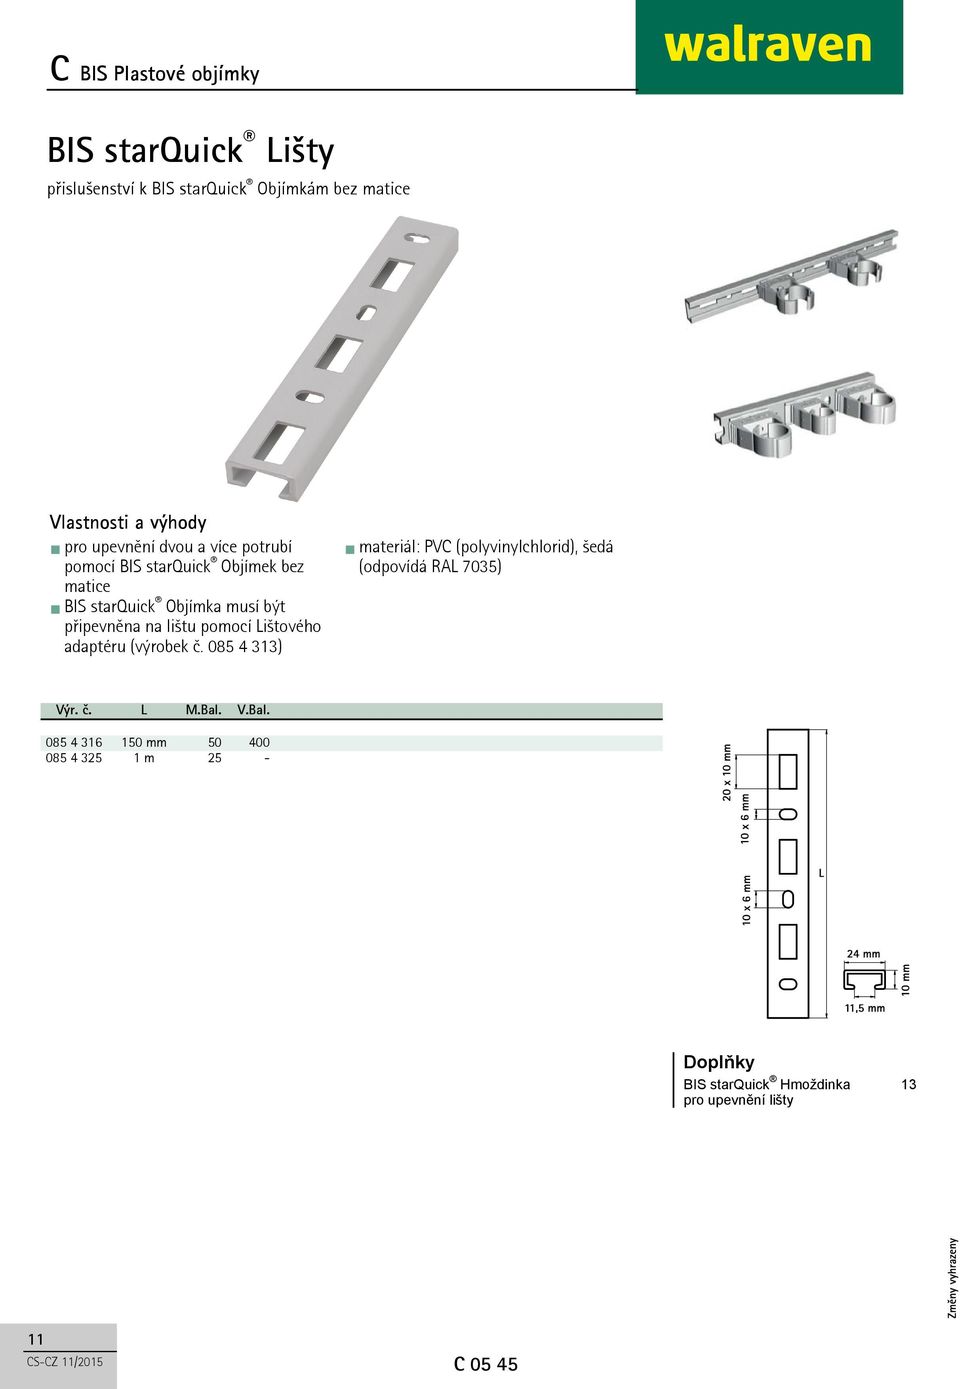 Lištového adaptéru (výrobek č. 085 4 313) materiál: PVC (polyvinylchlorid), šedá (odpovídá RAL 7035) Výr. č. L M.